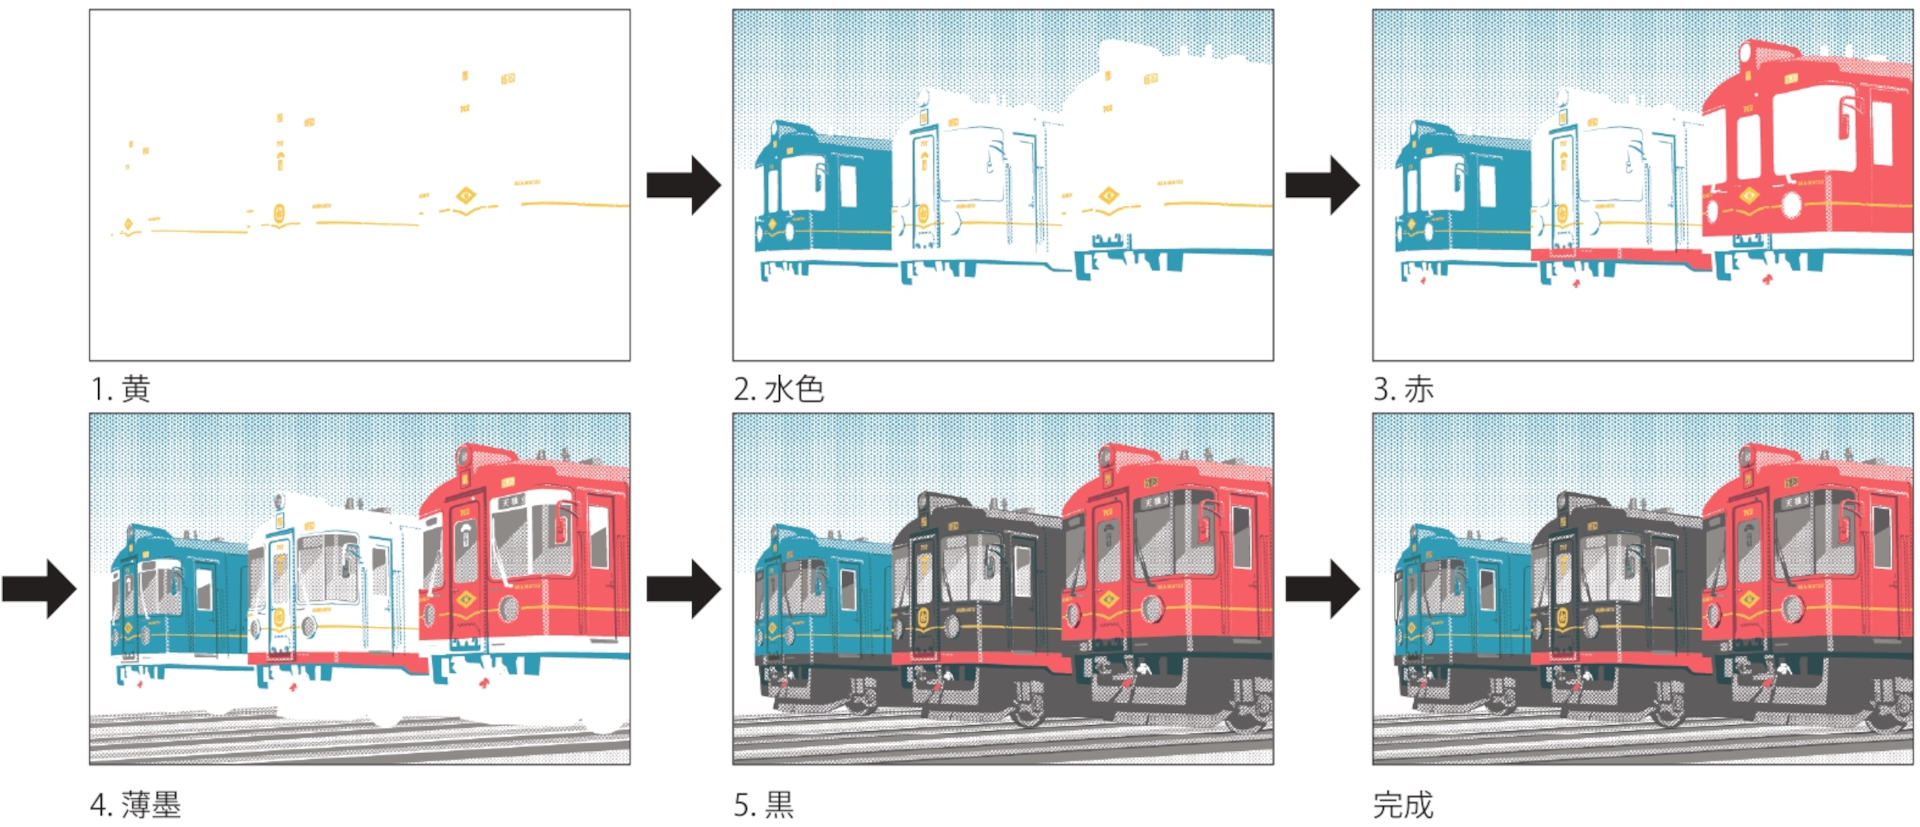 京都丹後鉄道、観光列車の絵が浮かび上がる「重ね捺しスタンプラリー 